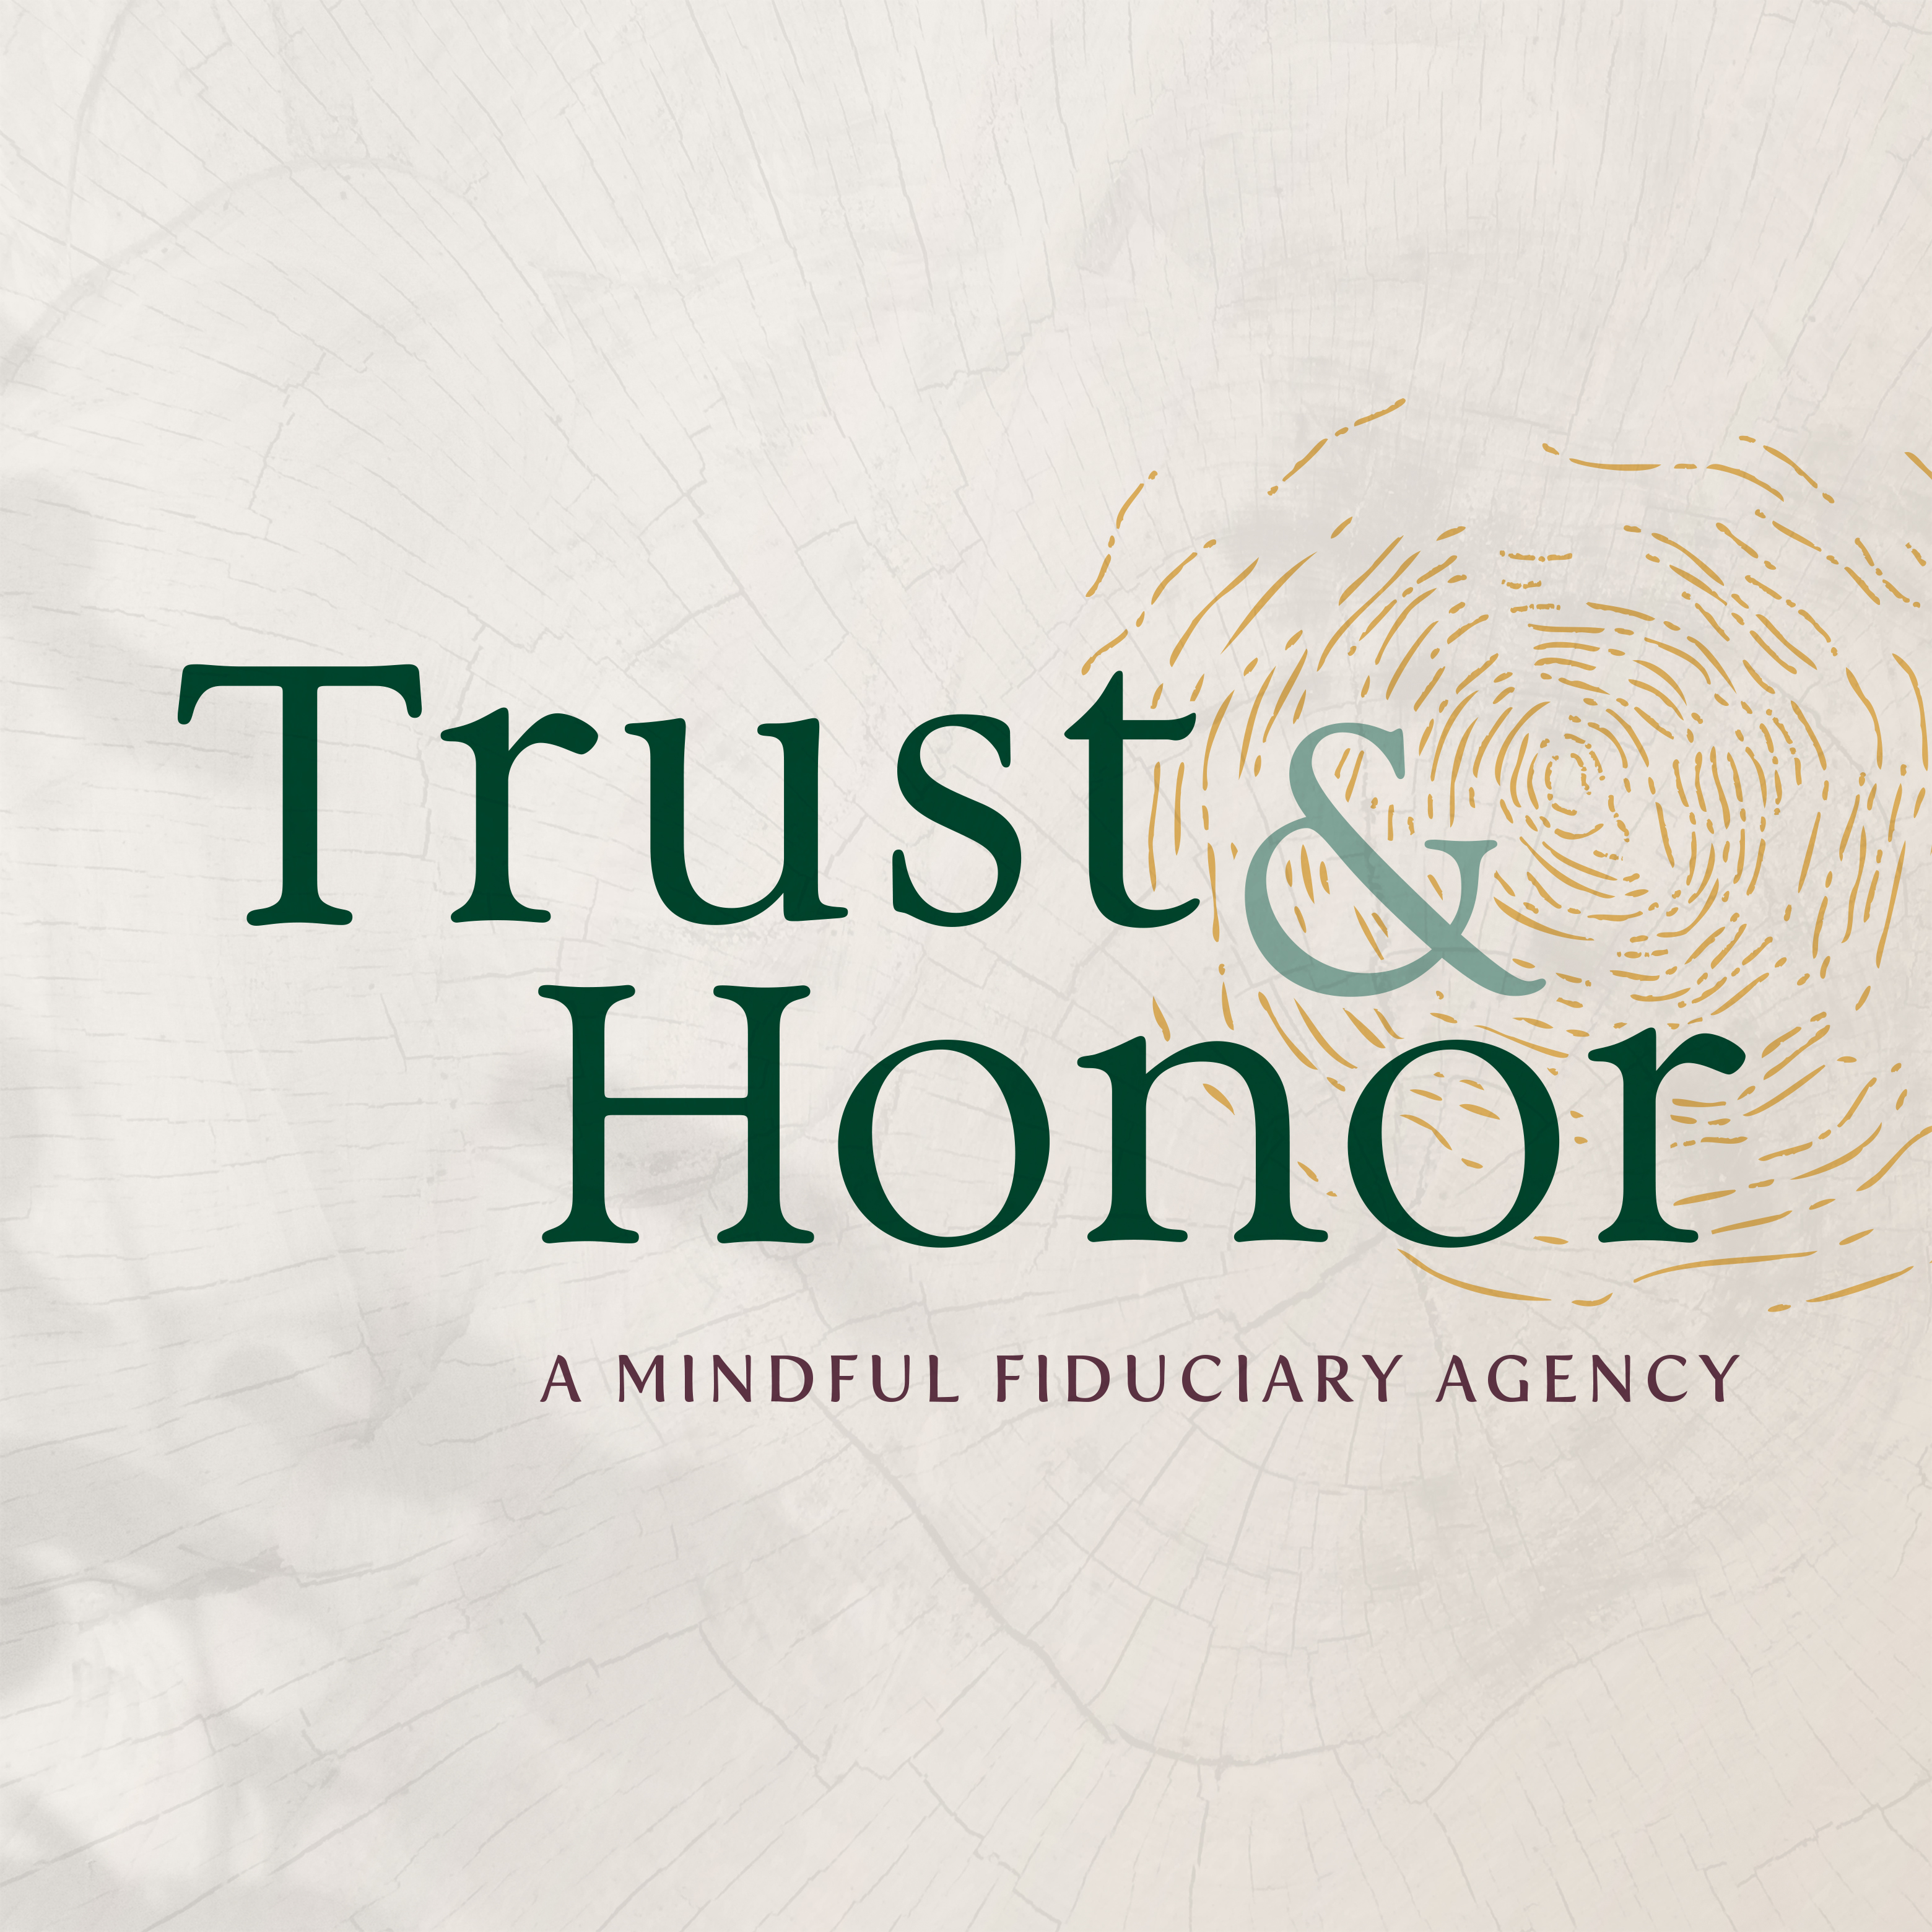 Trust & Honor